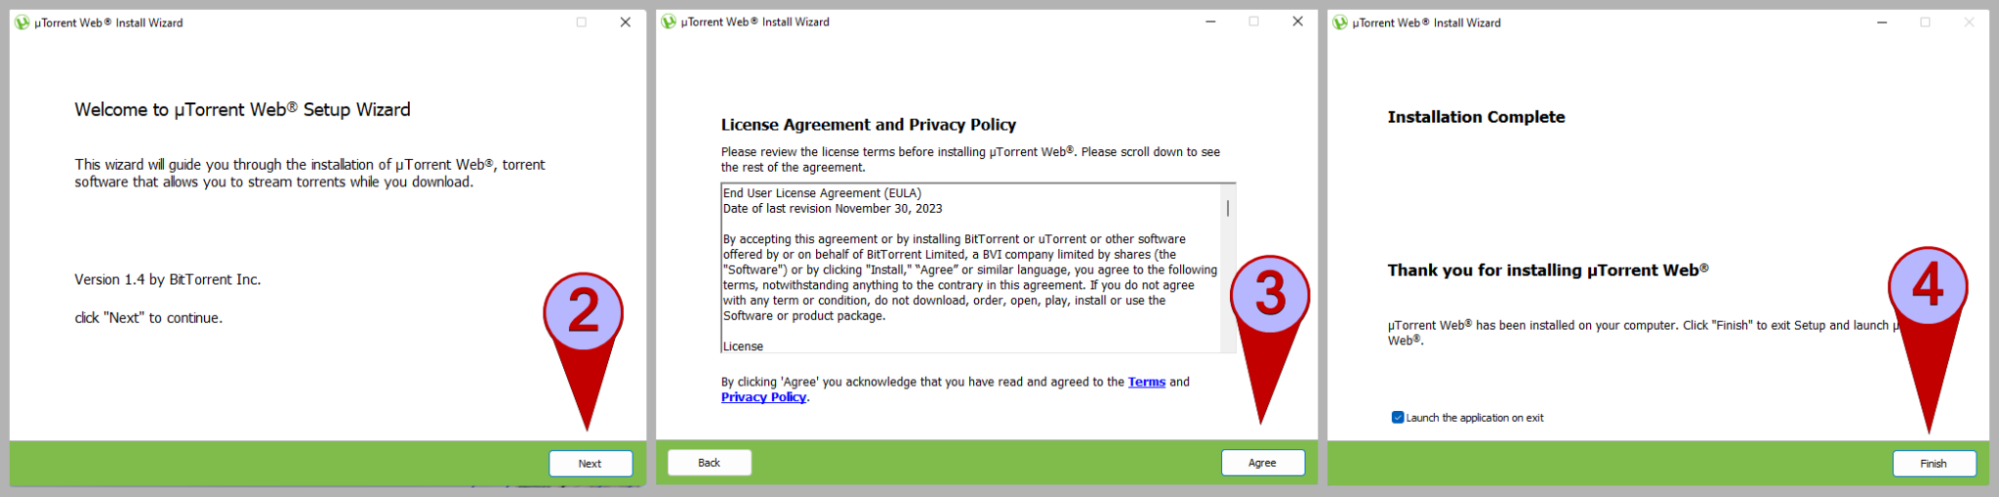 Пошаговый процесс установки uTorrent Web в Windows, показано на 3-х скриншотах.